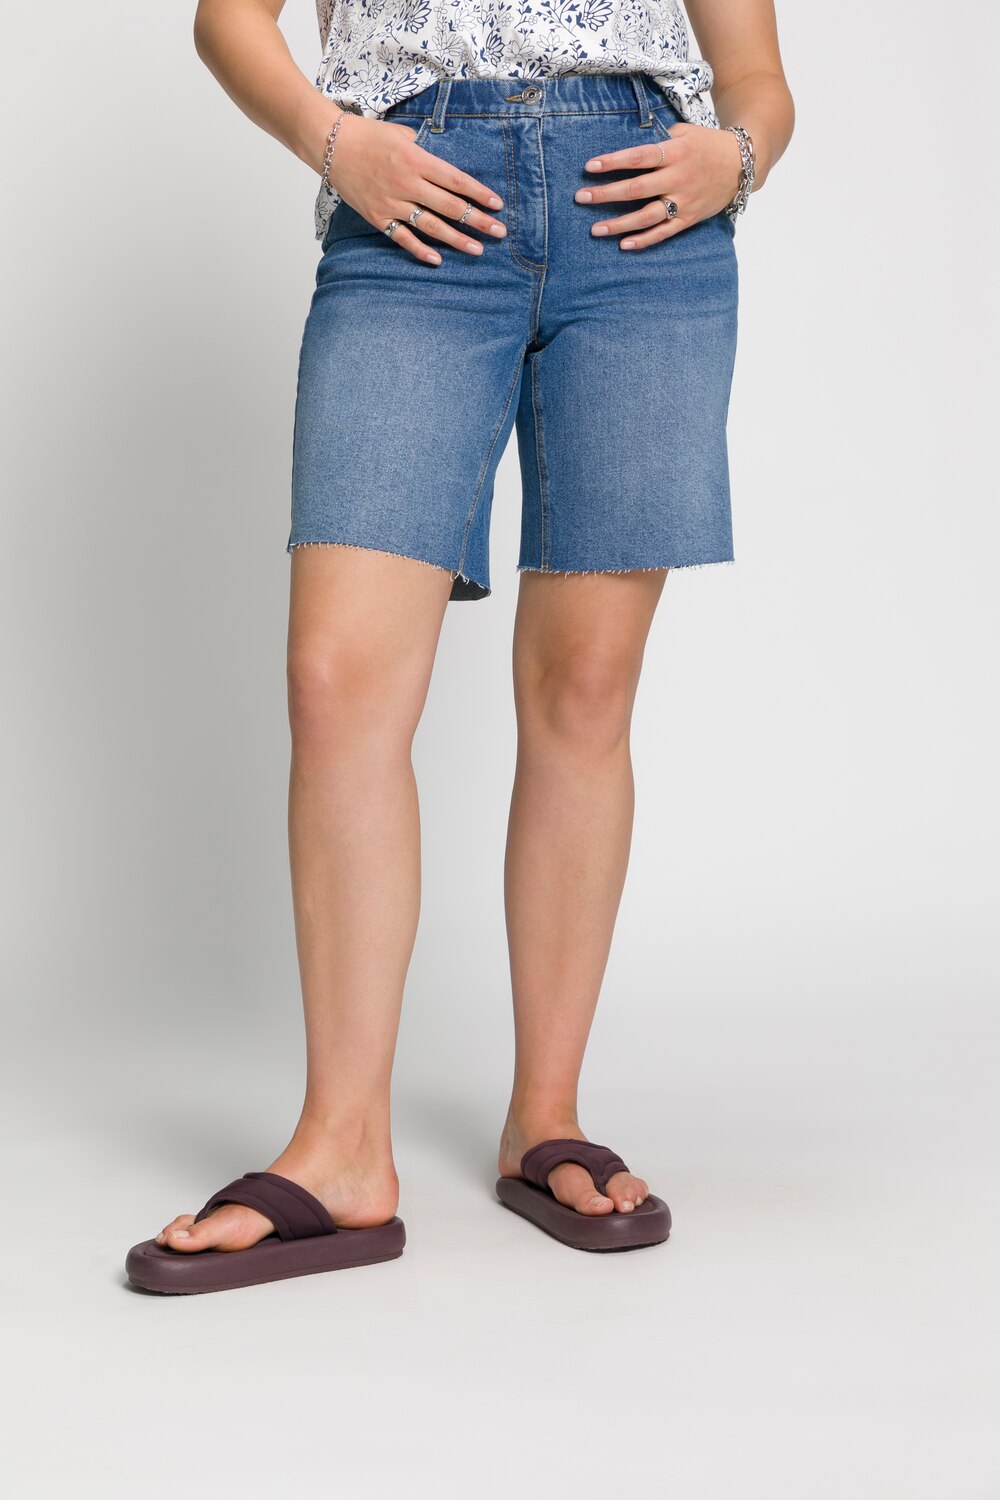 Grote Maten jeans shorts, Dames, blauw, Maat: 54, Katoen, Studio Untold